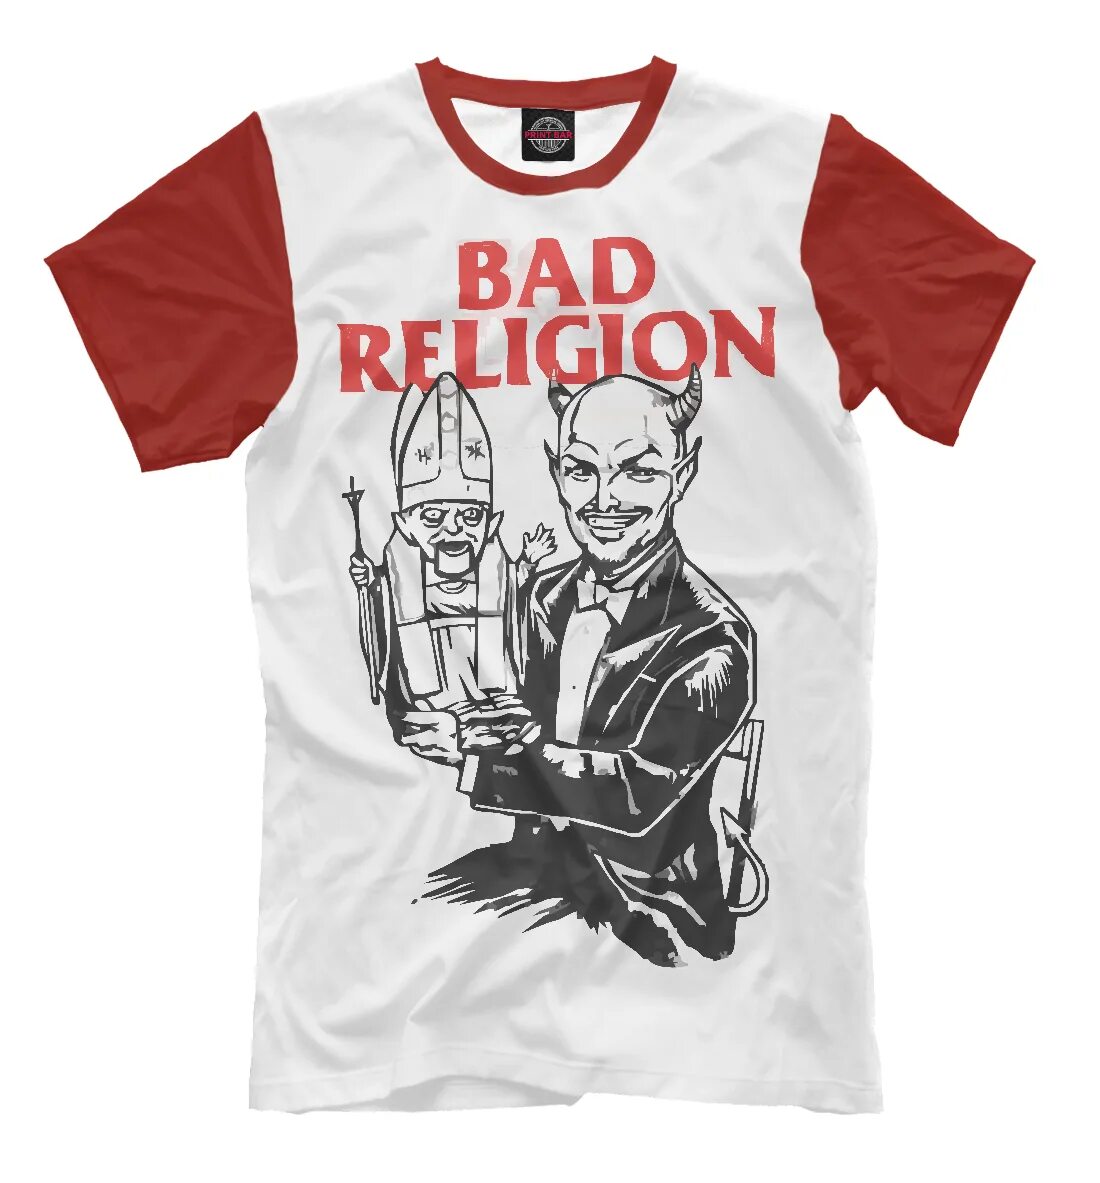 Bad Religion футболка. Футболка Religion мужская. Футболка хорошему мальчику плохую девочку. Bad Religion обои. Bad collection